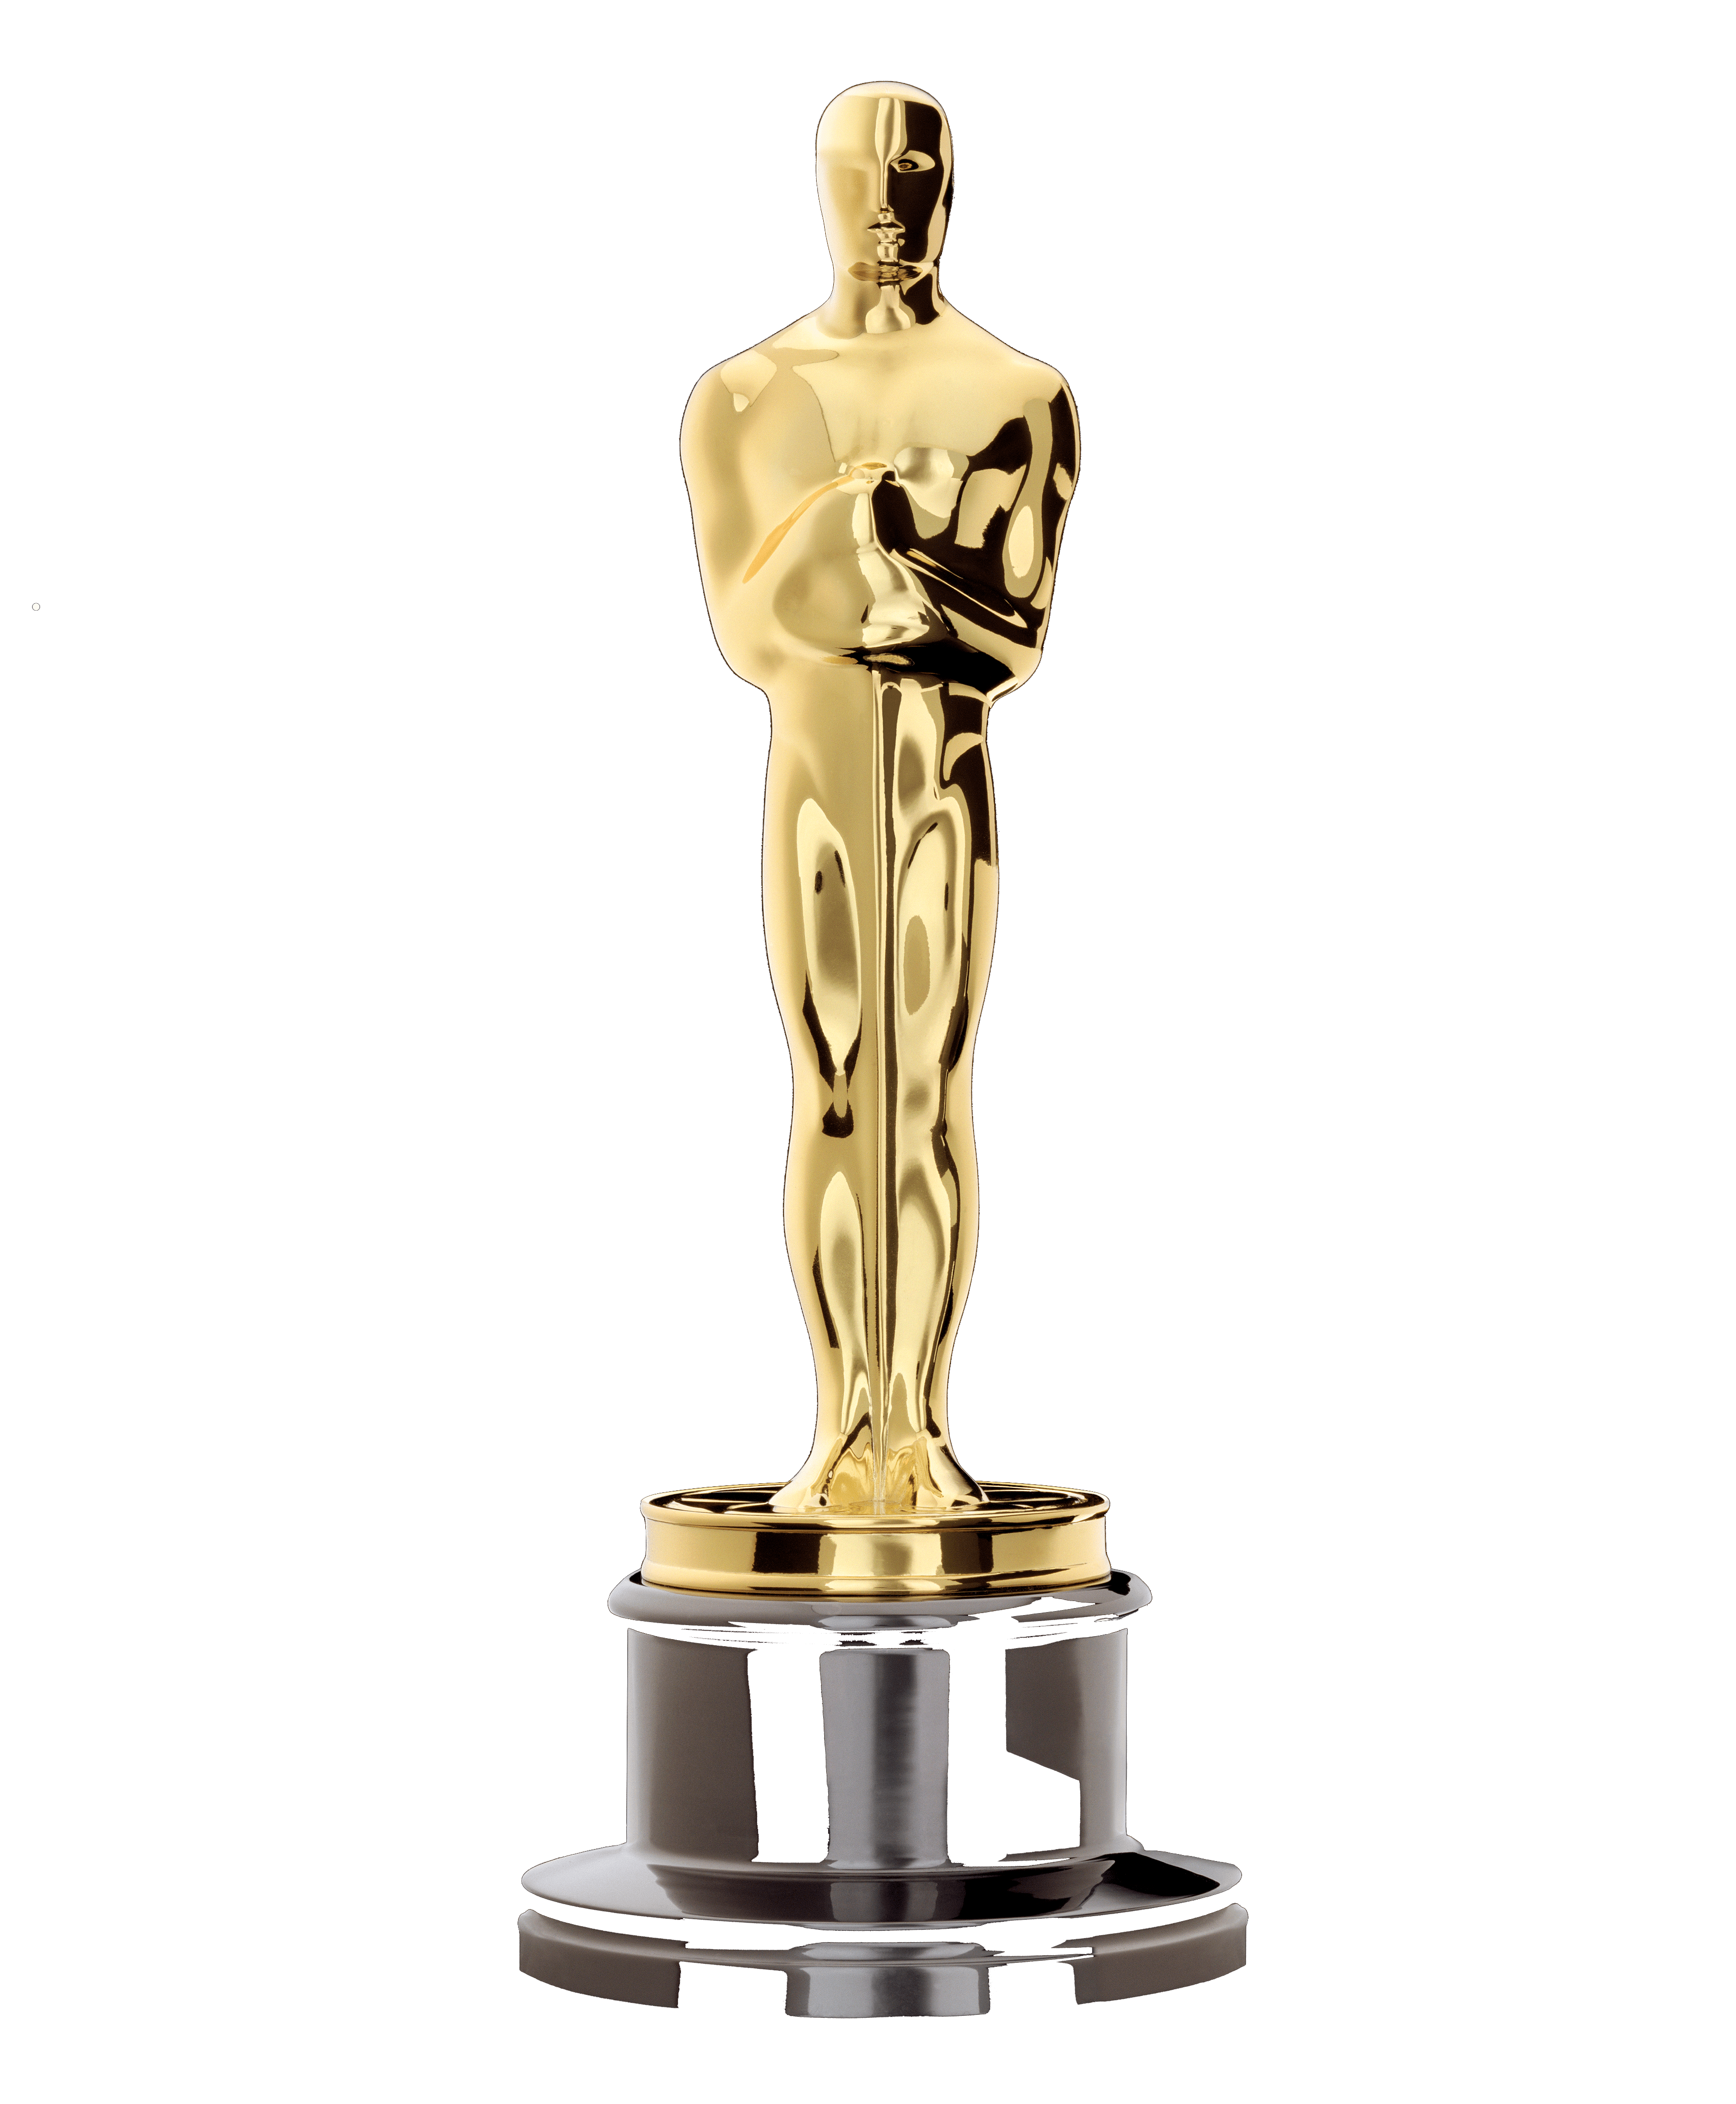 Oscar Academy Awards PNG HD pngteam.com